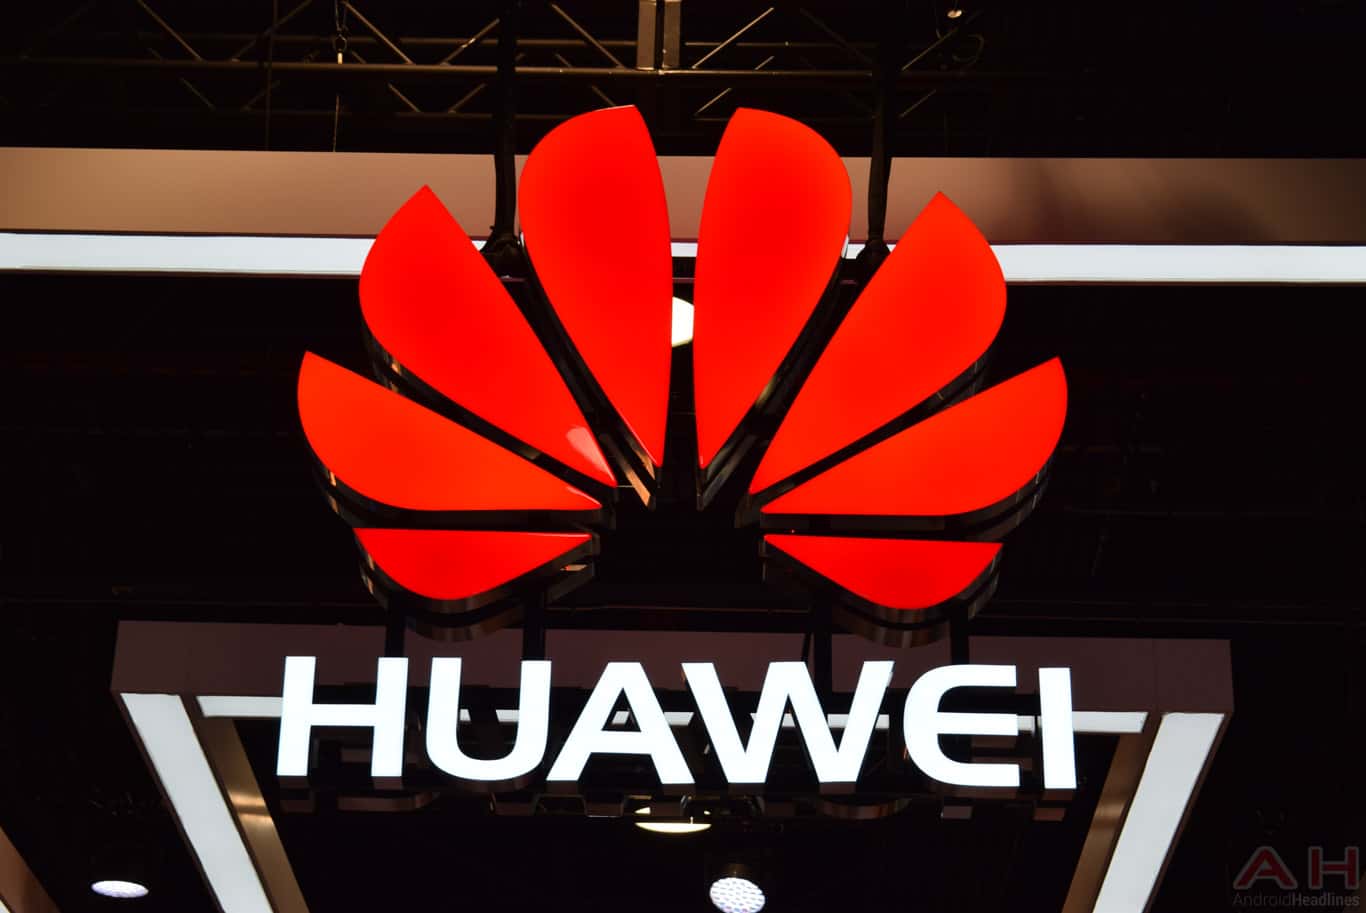 Huawei cho biết doanh thu tăng 39% lên 27 tỷ đô la trong quý 1 năm nay